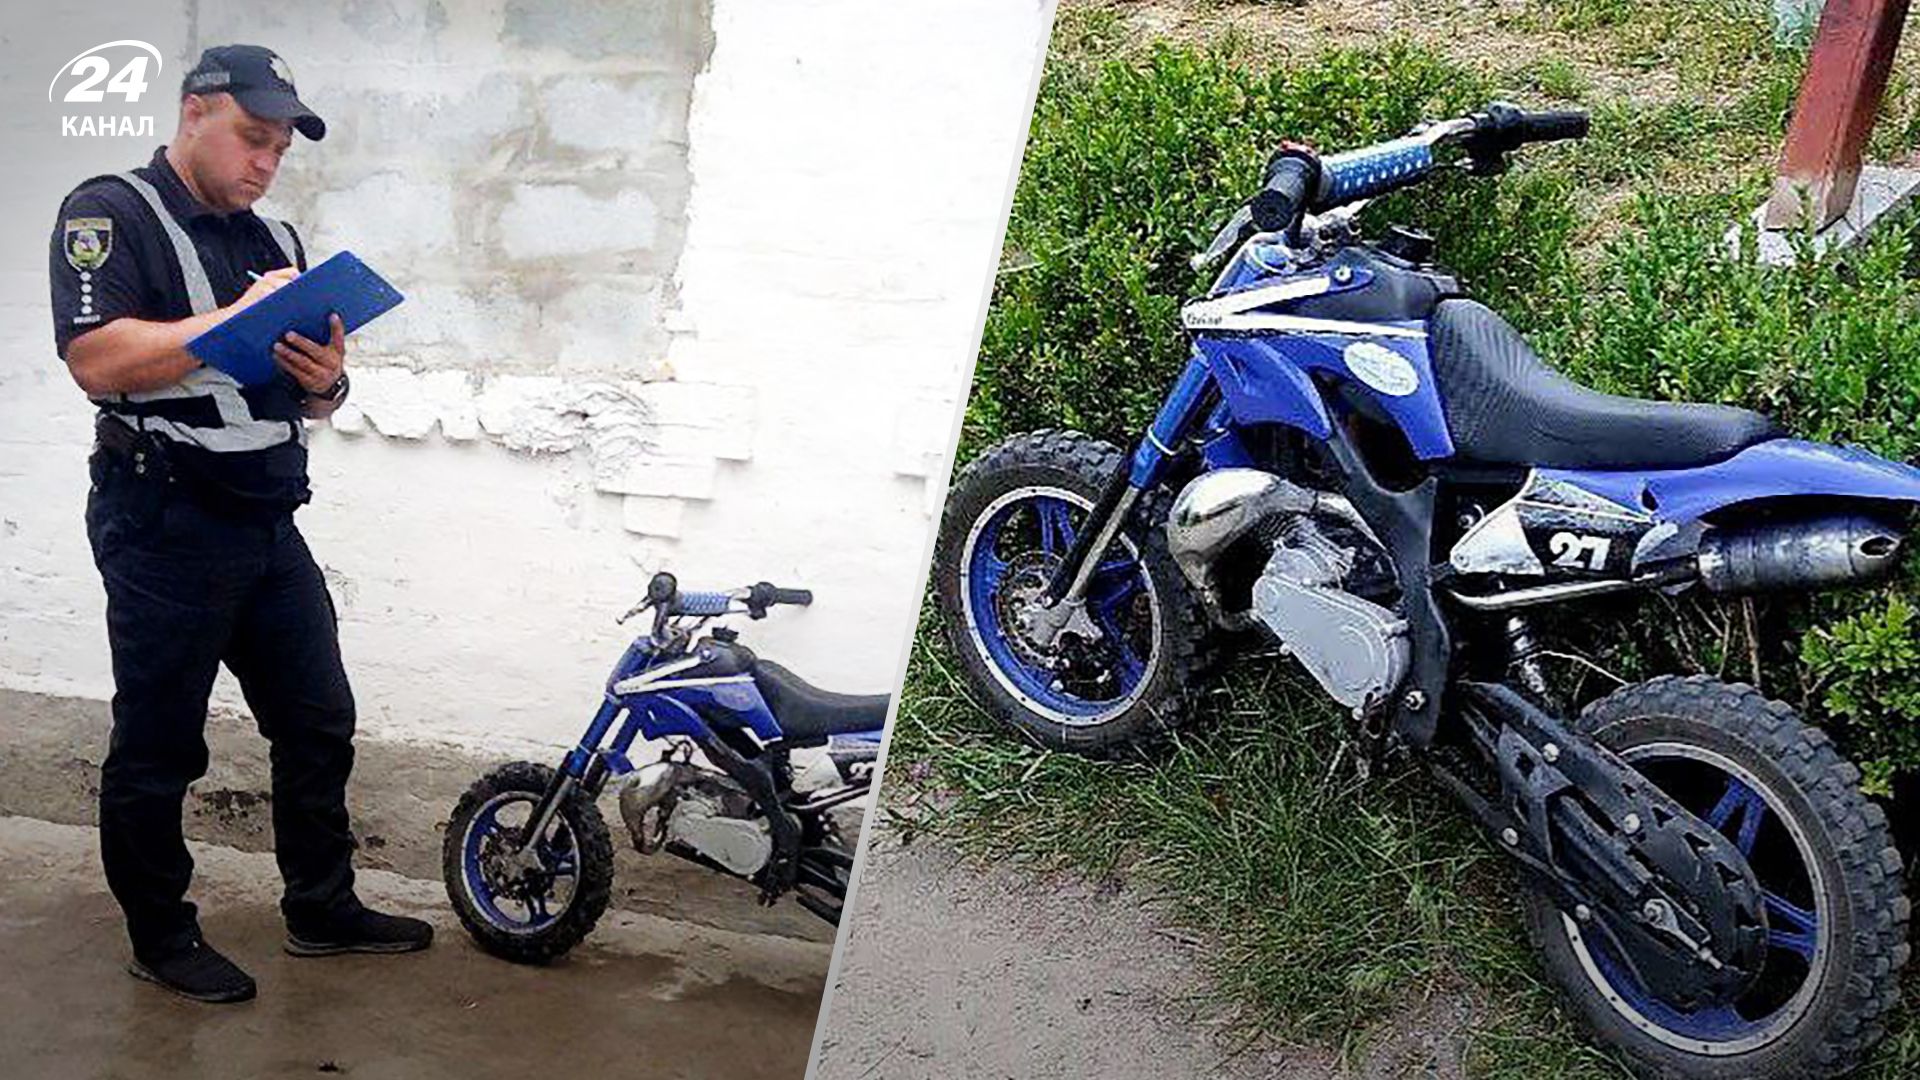 6-летний мальчик на мотоцикле врезался в забор в Киевской области - детали